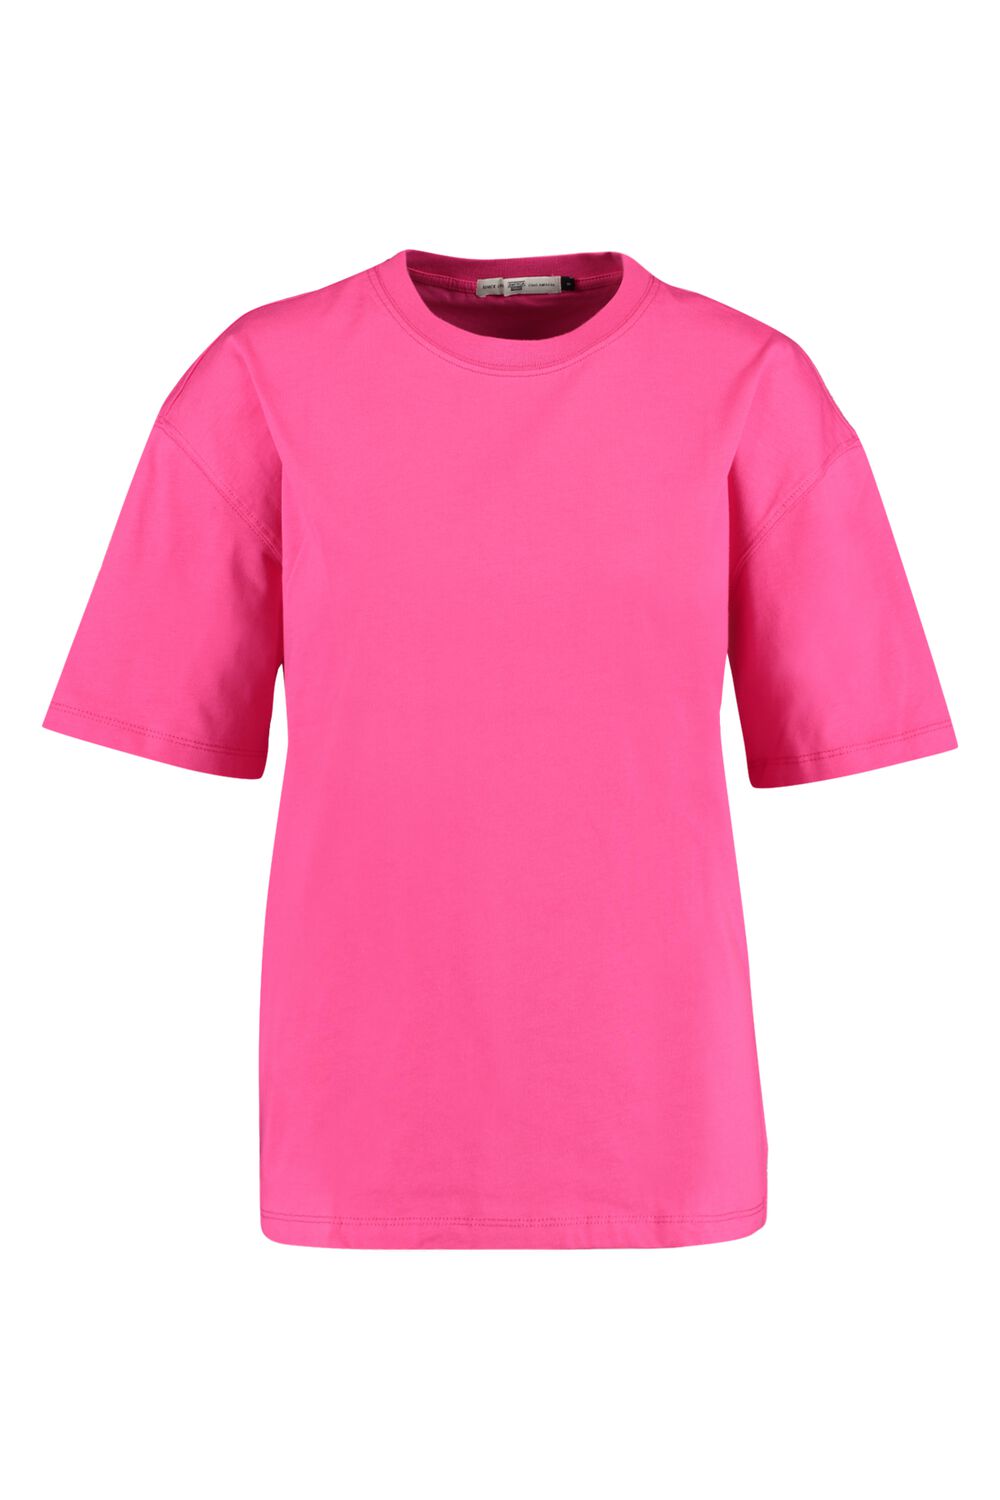 Basic T shirt Oversized Fit Roze